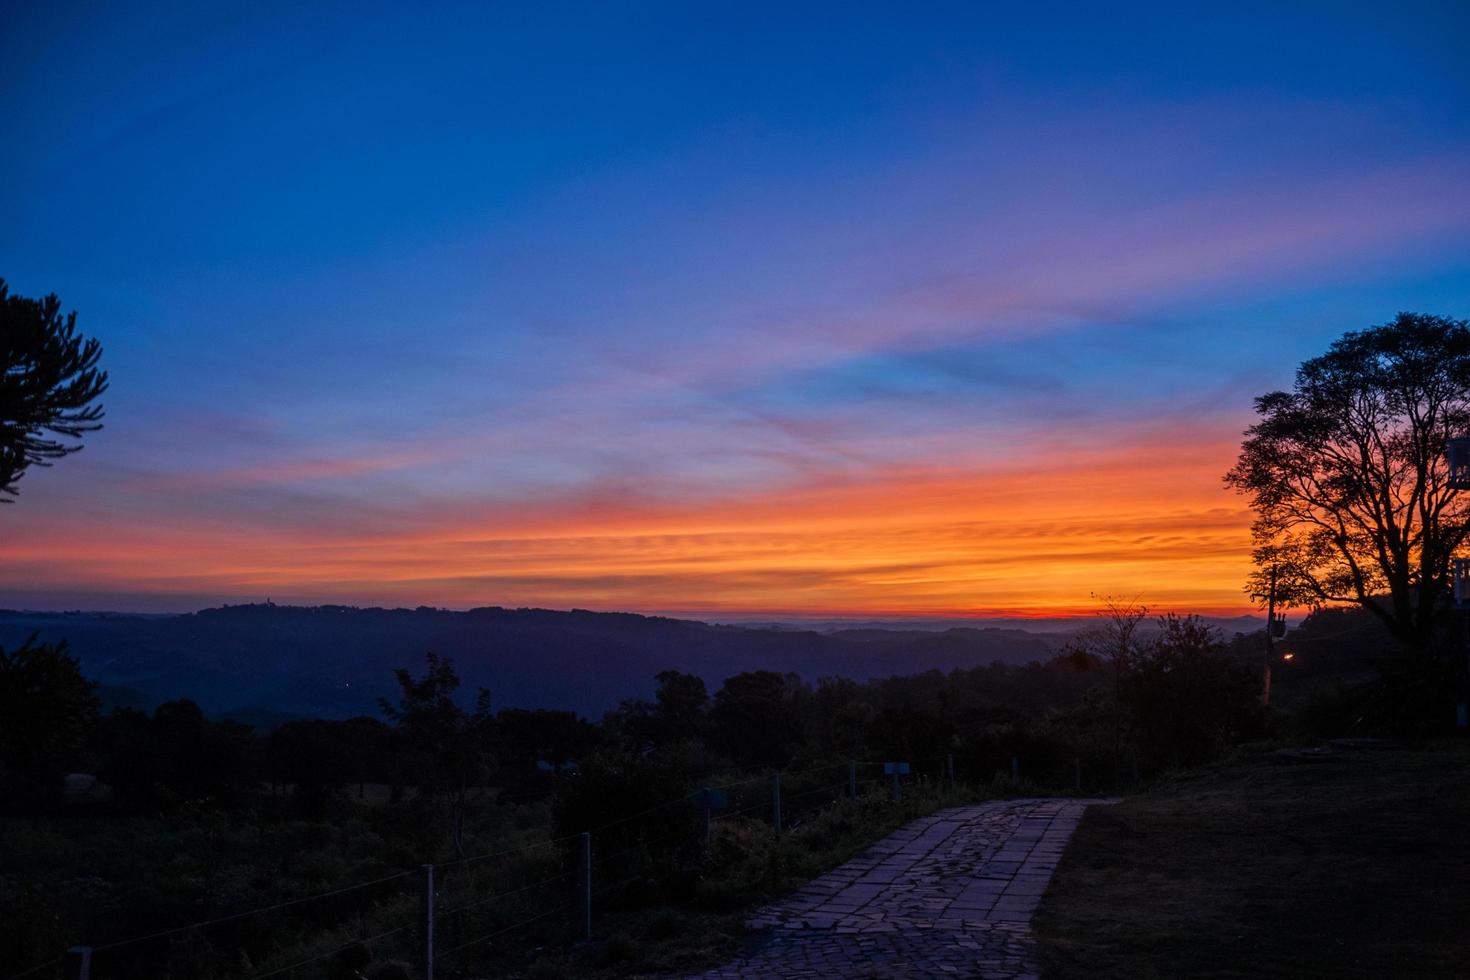 gekleurde wolken en lucht bij zonsondergang die een verbazingwekkend landschap vormen in een boerderij in de buurt van bento goncalves. een vriendelijk plattelandsstadje in Zuid-Brazilië, beroemd om zijn wijnproductie. foto